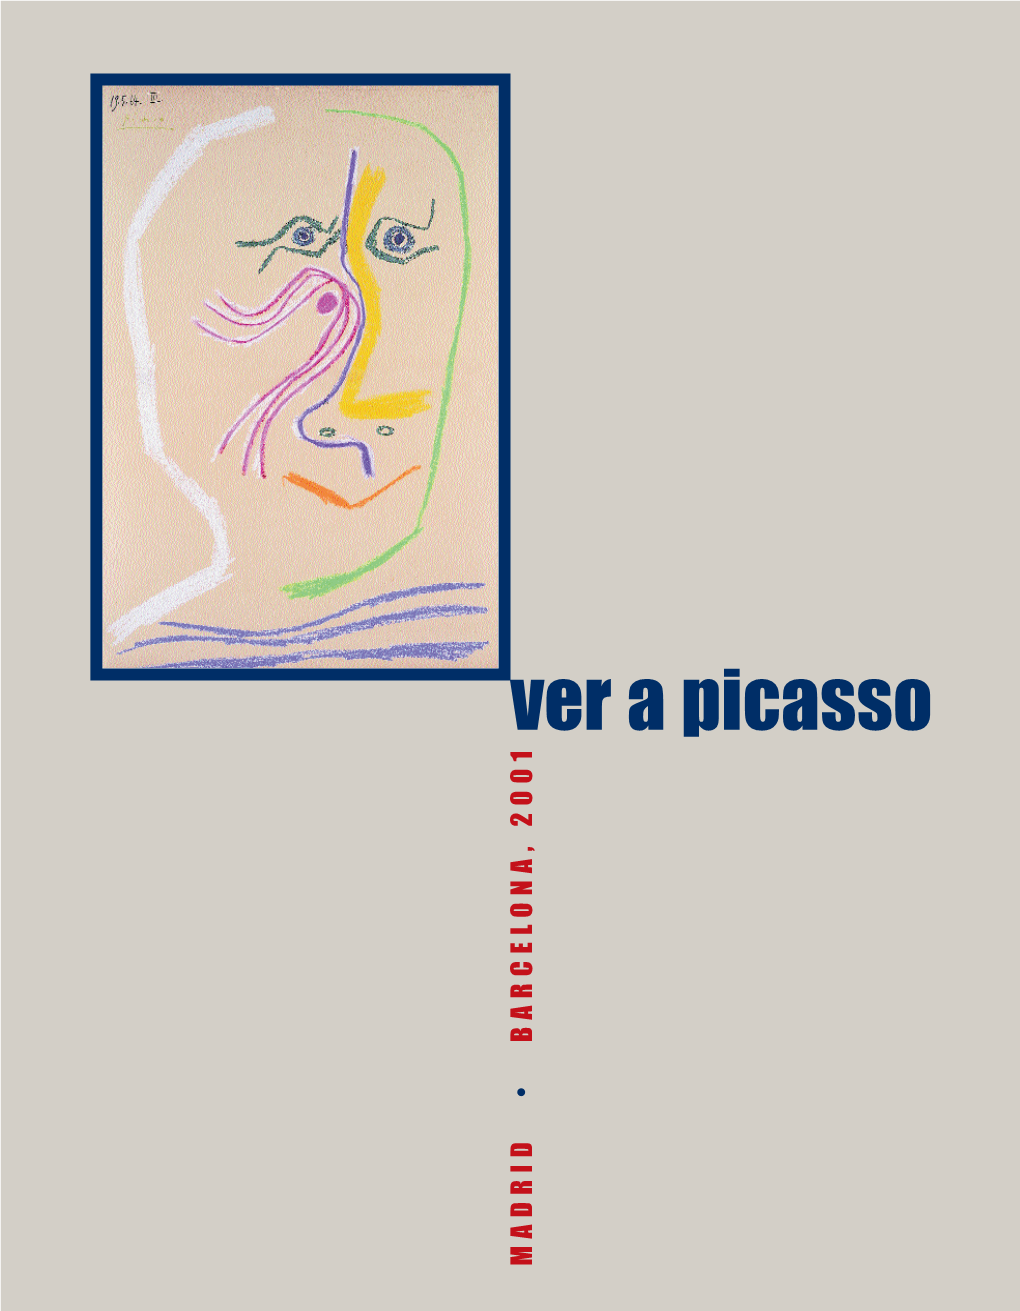 A Picasso 1 0 0 2